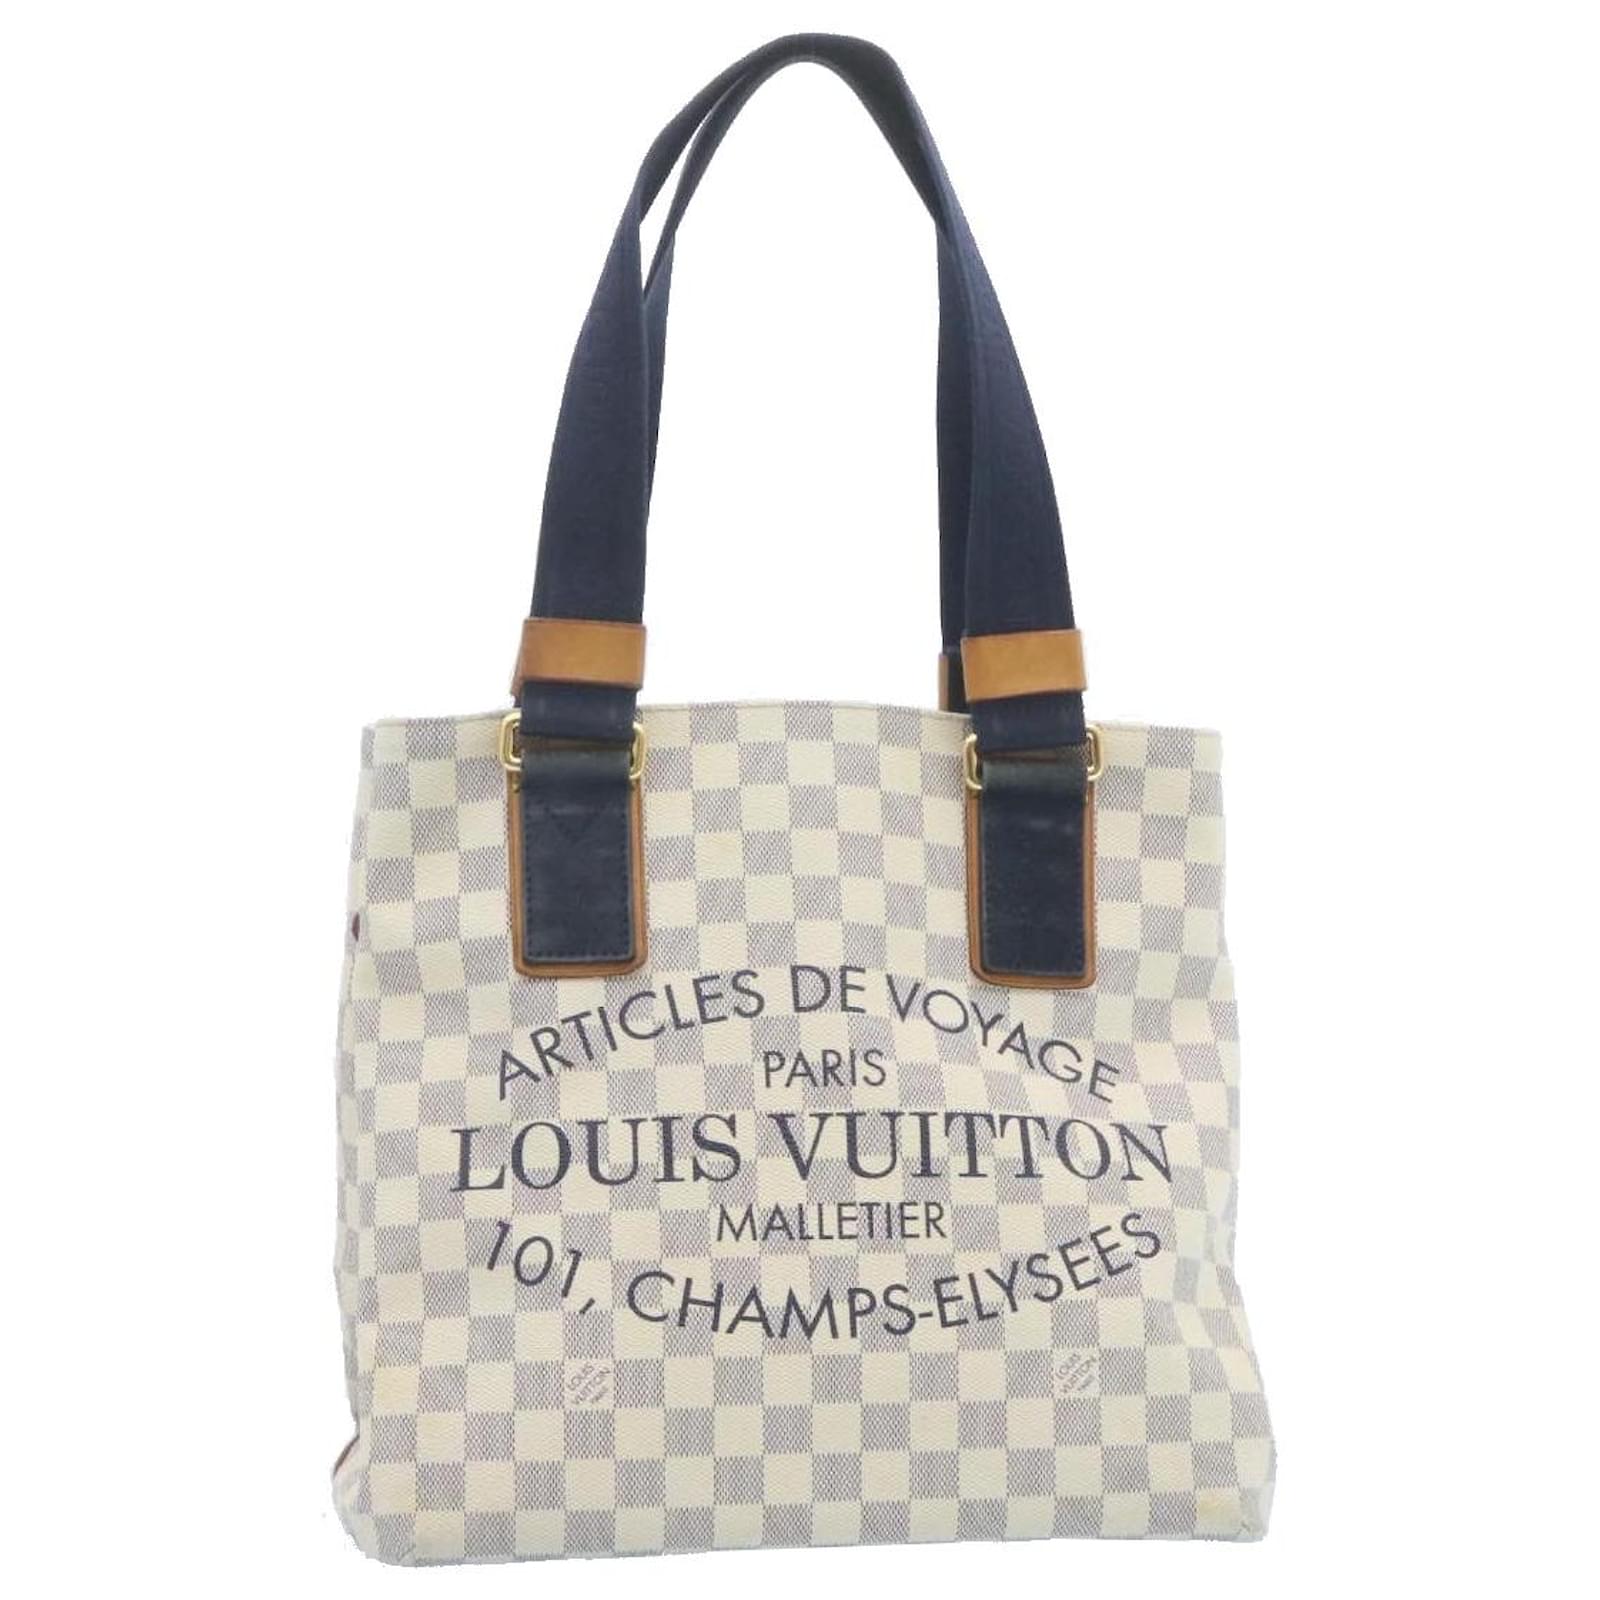 Louis Vuitton Articles De Voyage 101 Champs Elysees Paris Tote